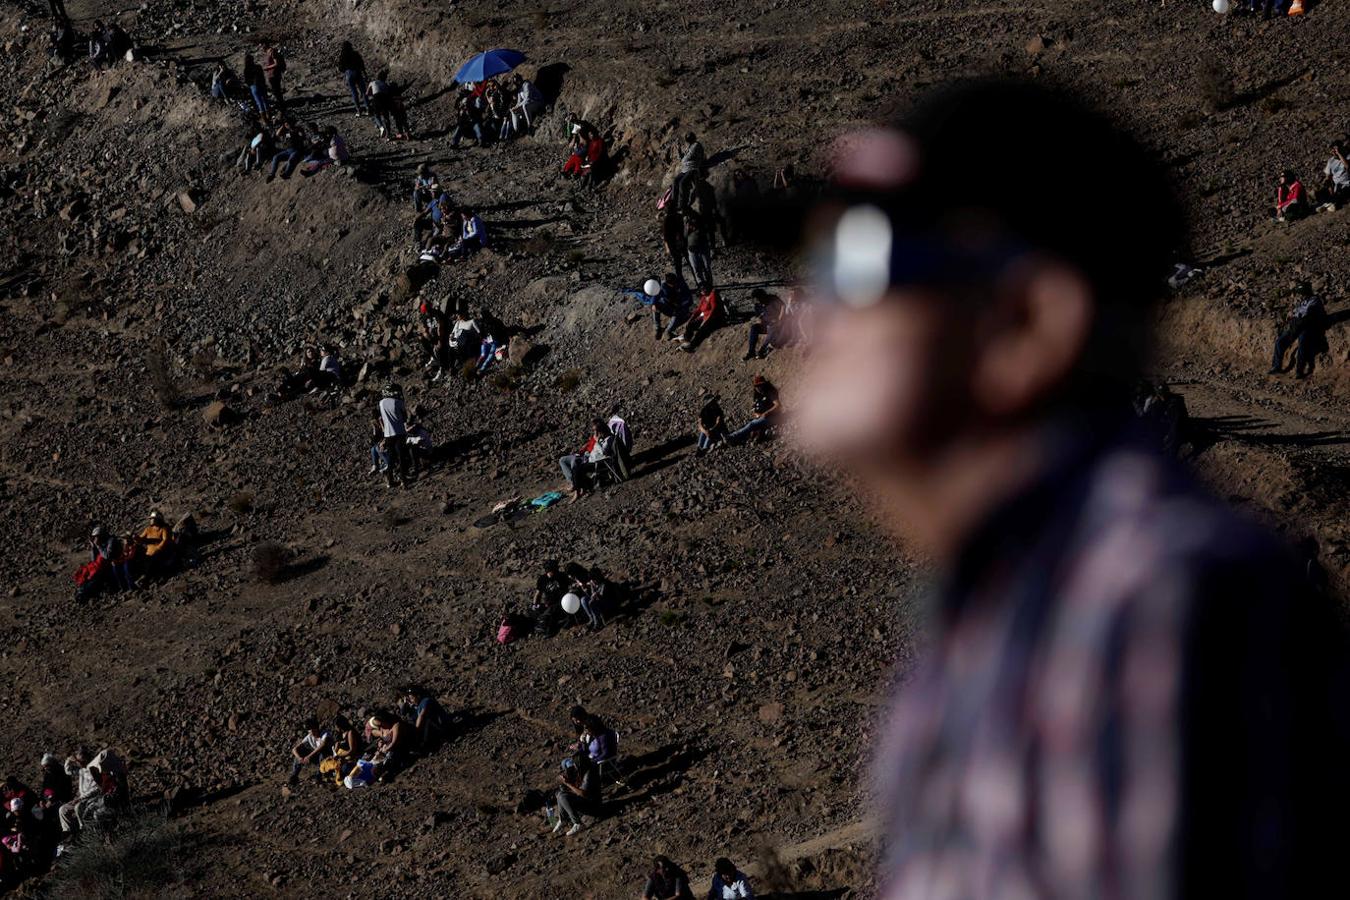 Así se vio el gran eclipse sudamericano. Miles de personas se congregaron en distintos lugares de Chile y Argentina para contemplar el espectáculo astronómico